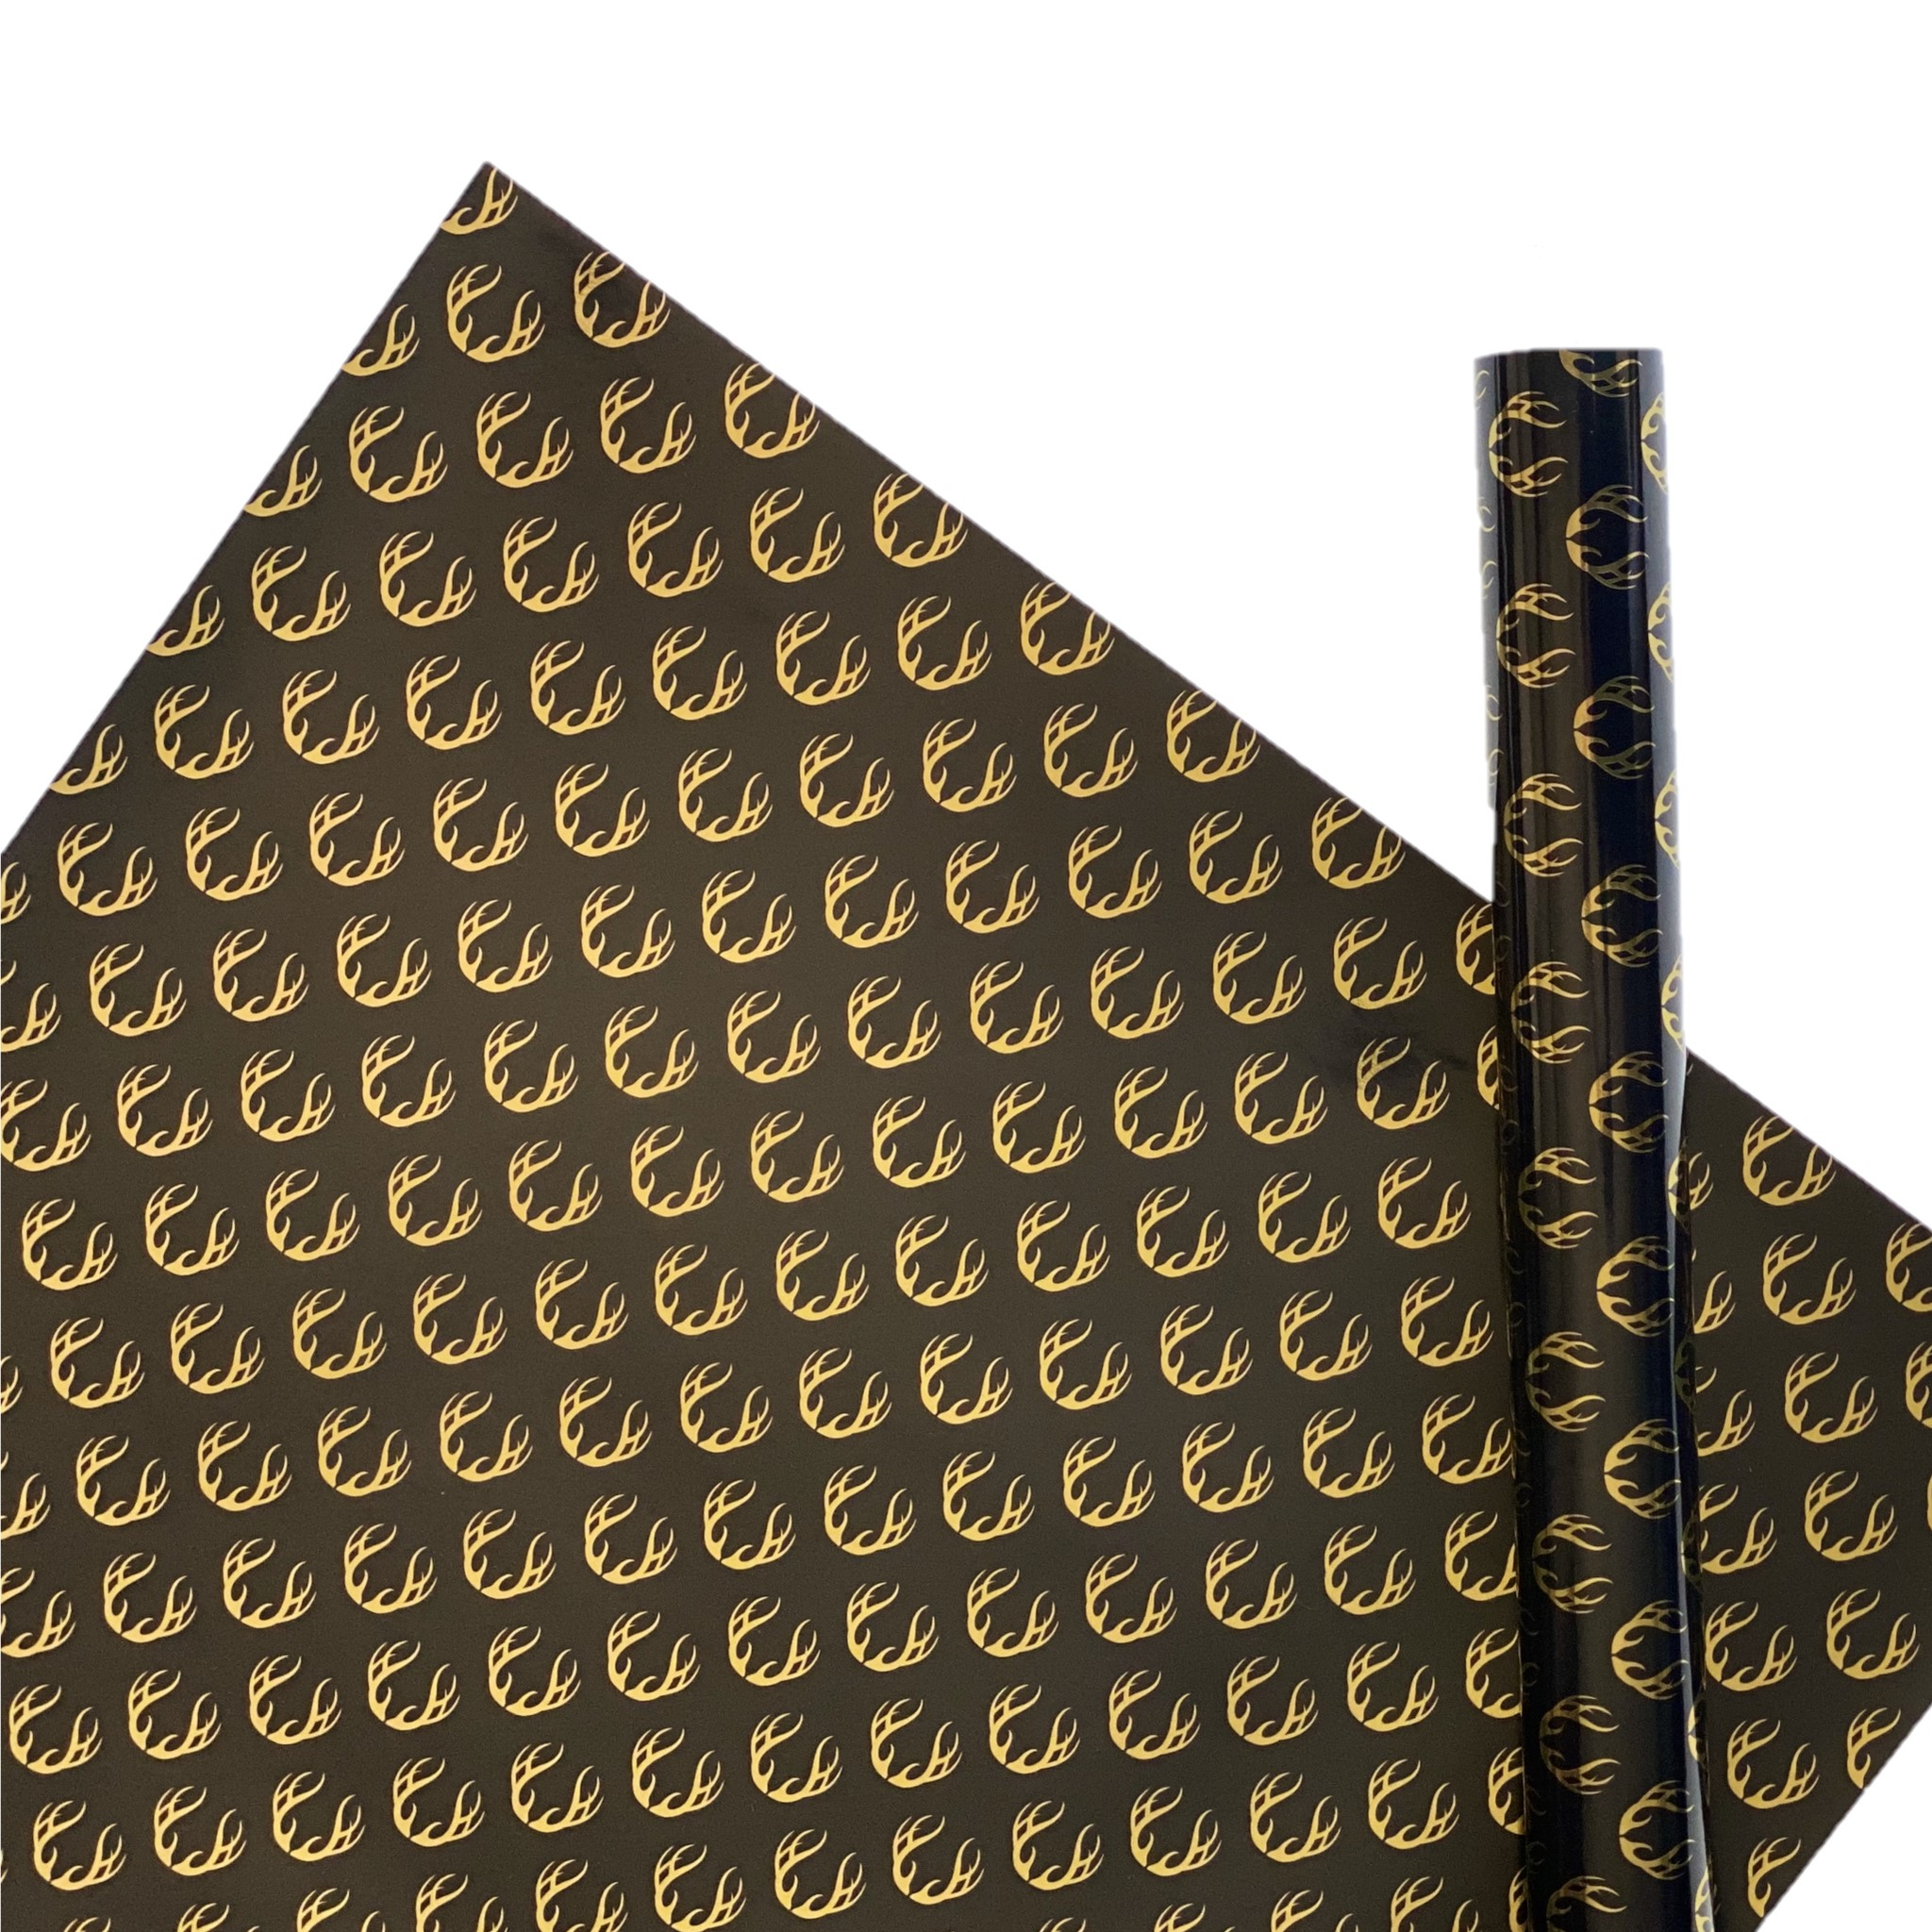 Antler Black and Gold Foil Gift Wrap Sheet